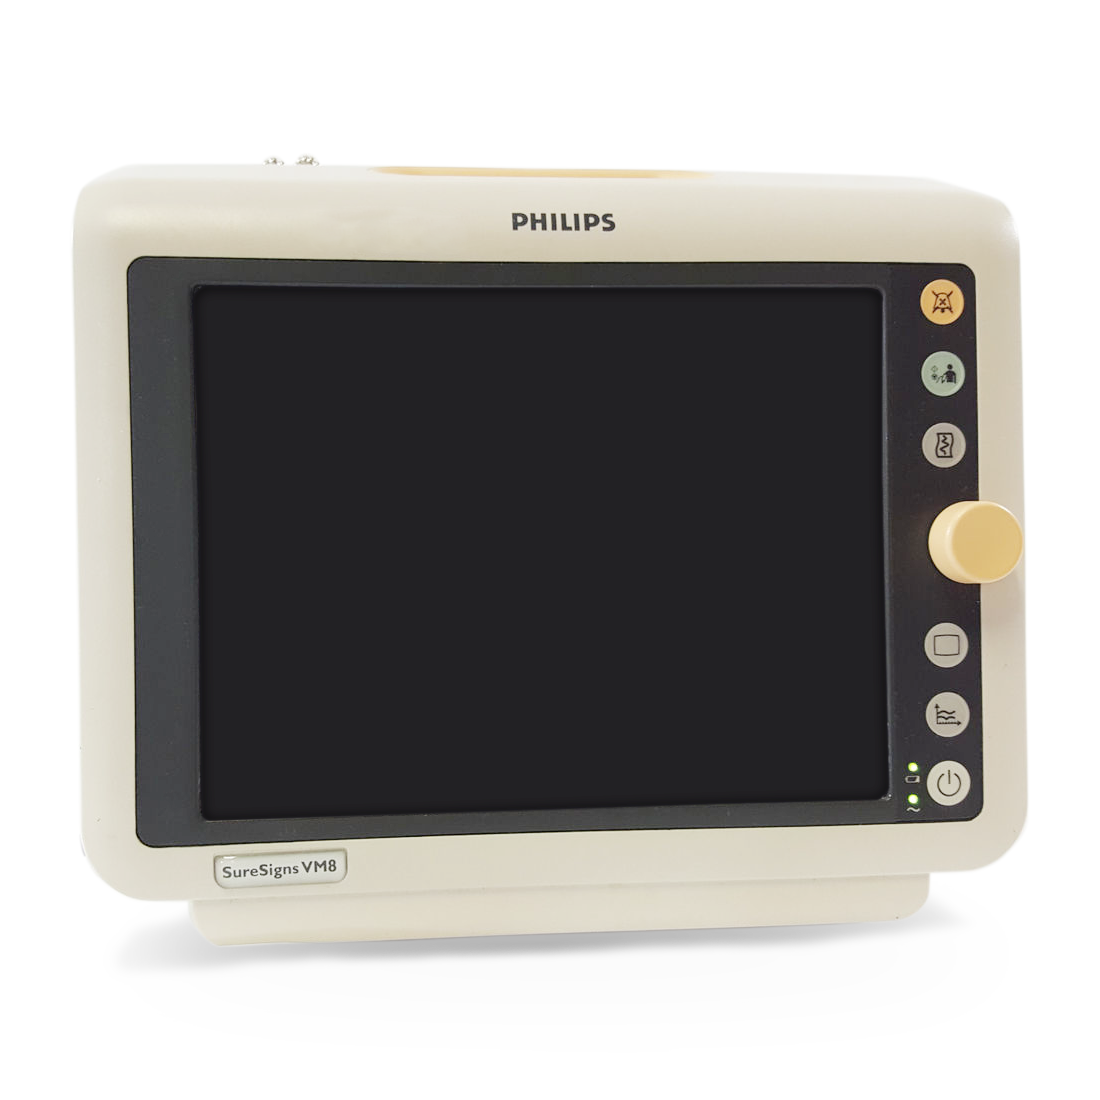 Philips IntelliVue VM8 Patient Monitor